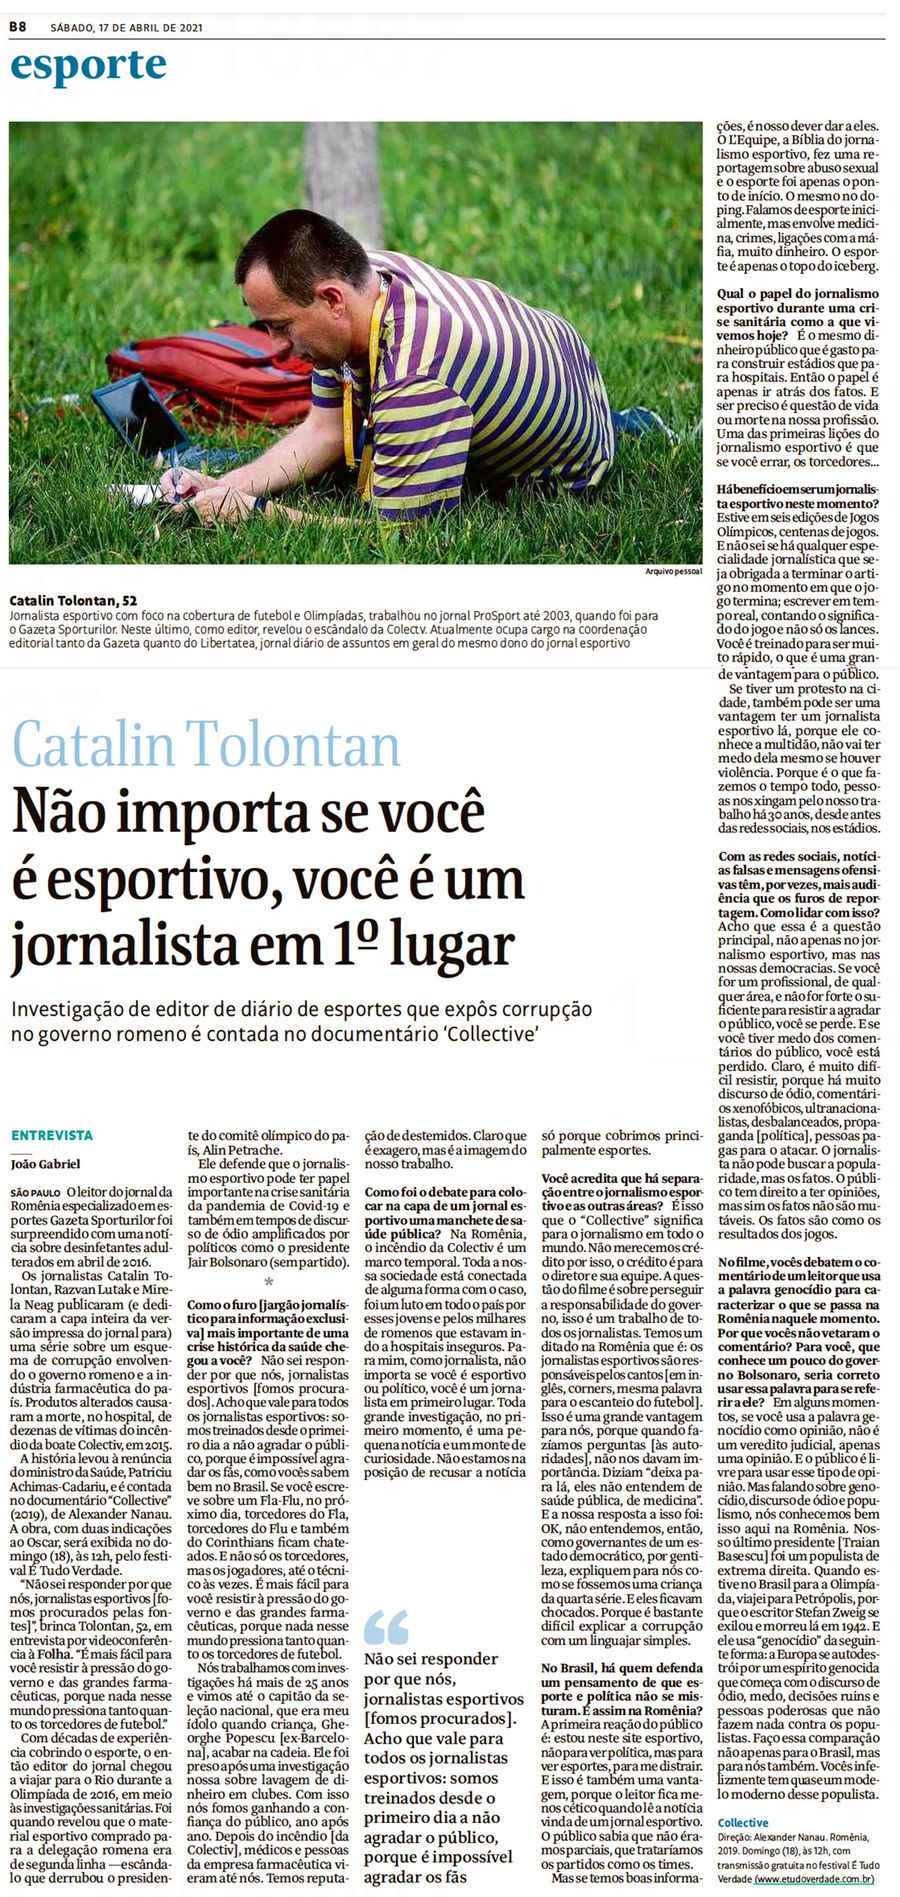 Folha de S. Paulo, cel mai reputat ziar brazilian, a intervievat jurnaliștii GSP: „Fiecare investigație mare a început dintr-o știre mică